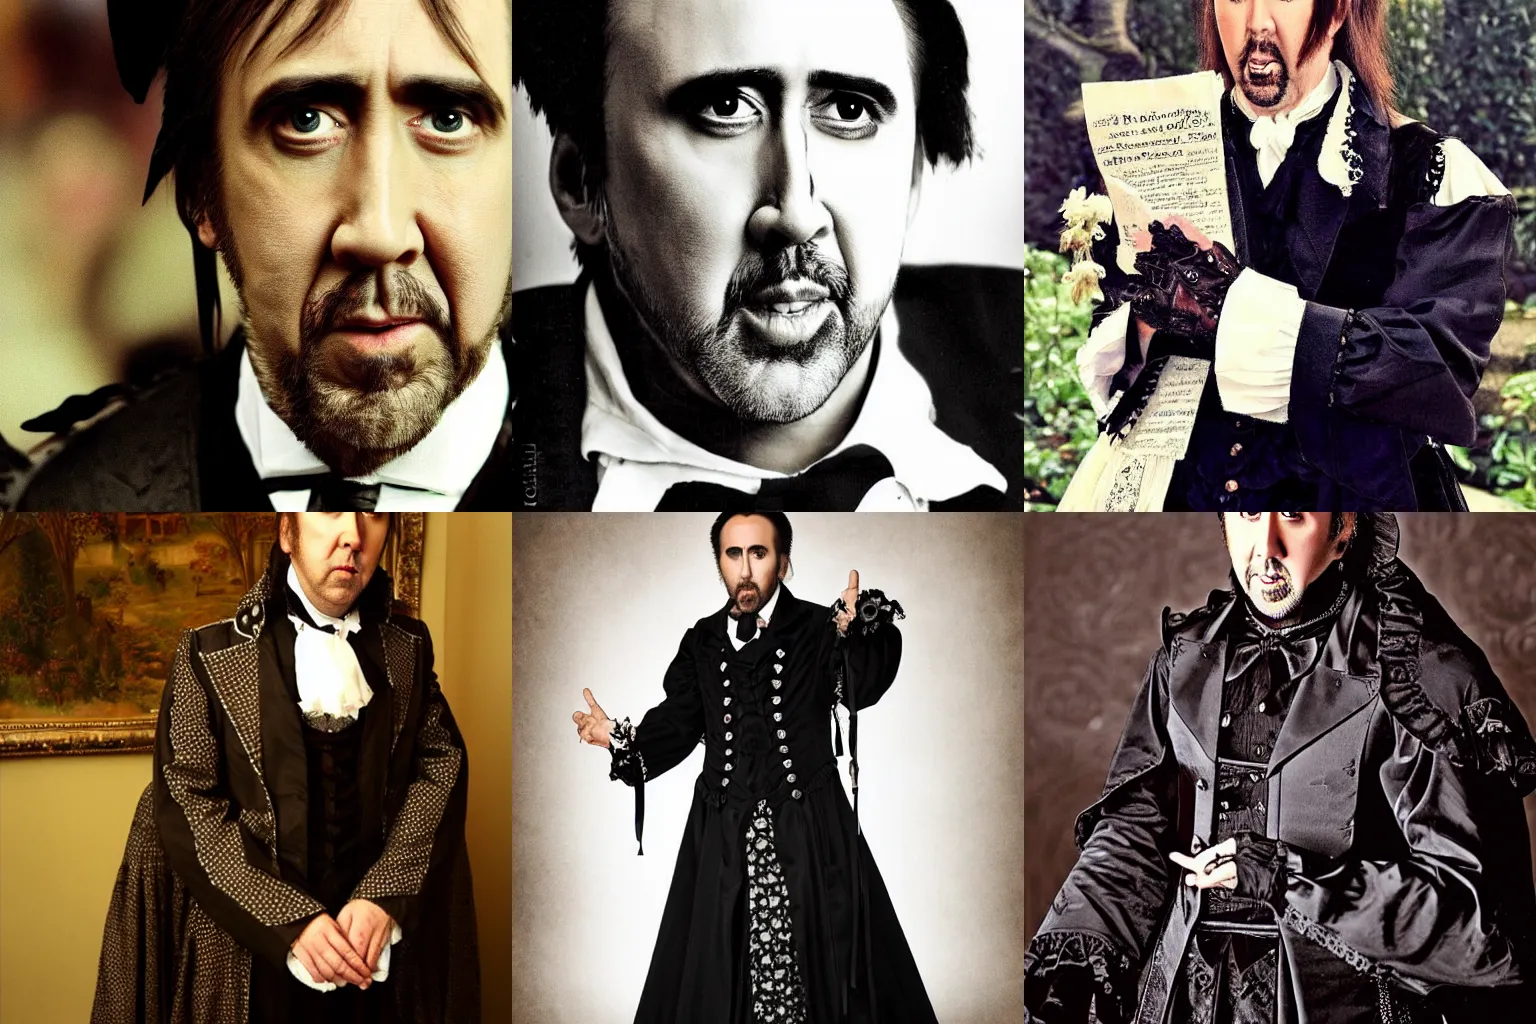 Prompt: Nicolas Cage in a victorian gothic lolita costume